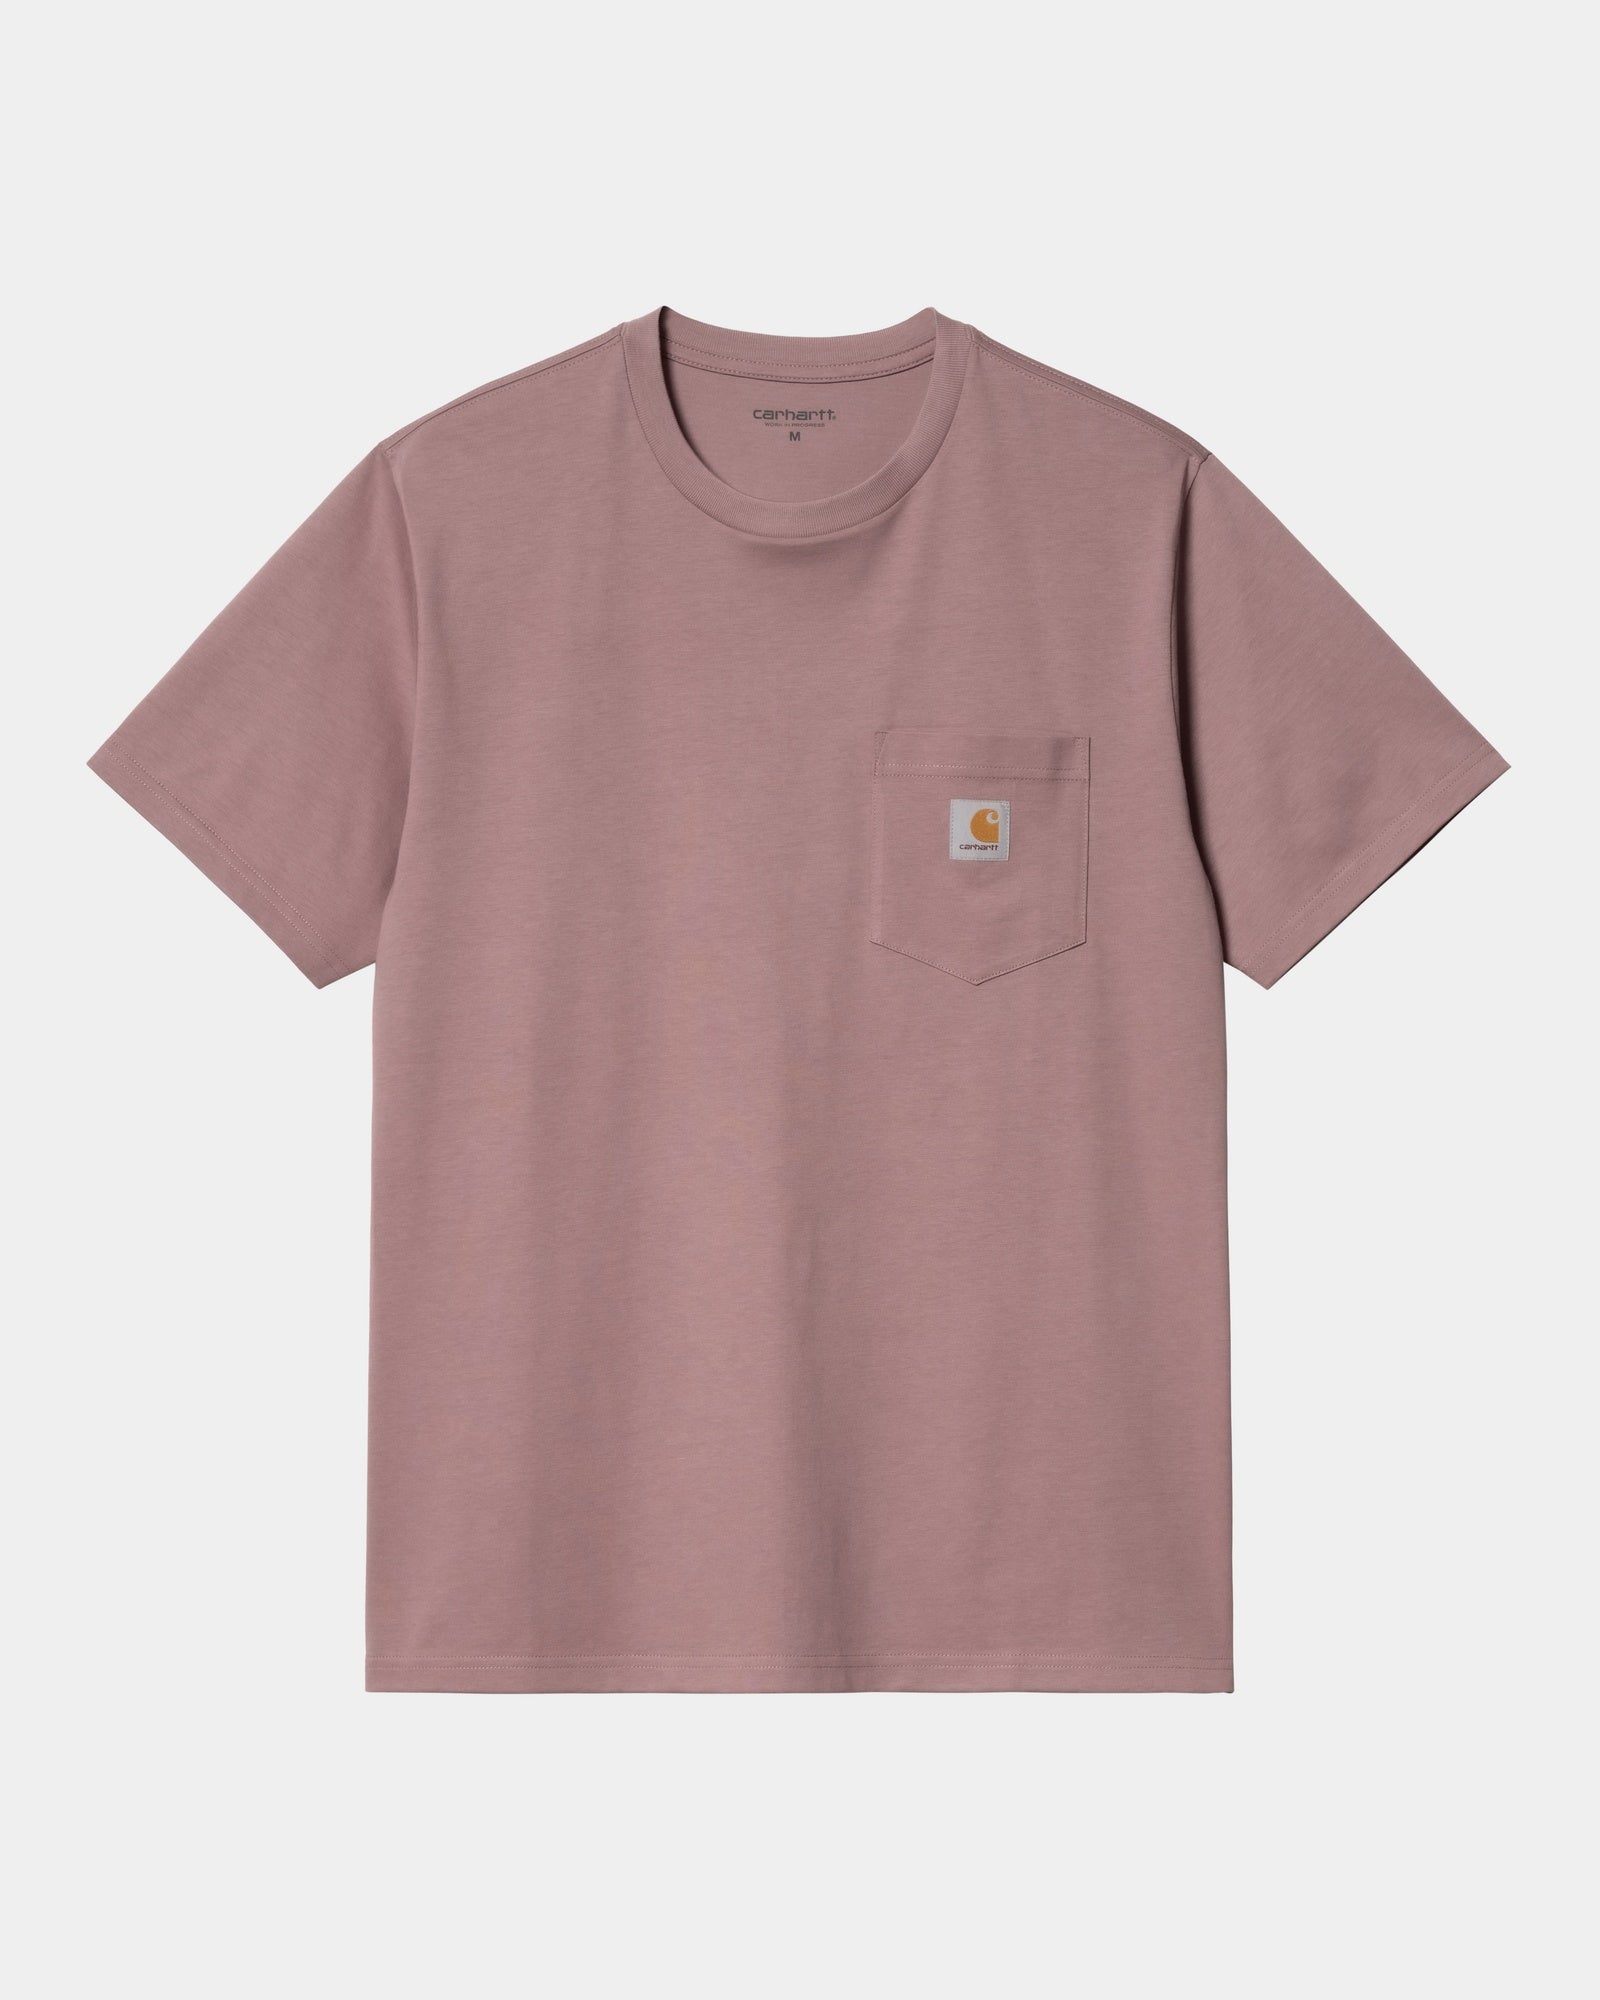 칼하트WIP Carhartt Pocket T-Shirt,Daphne